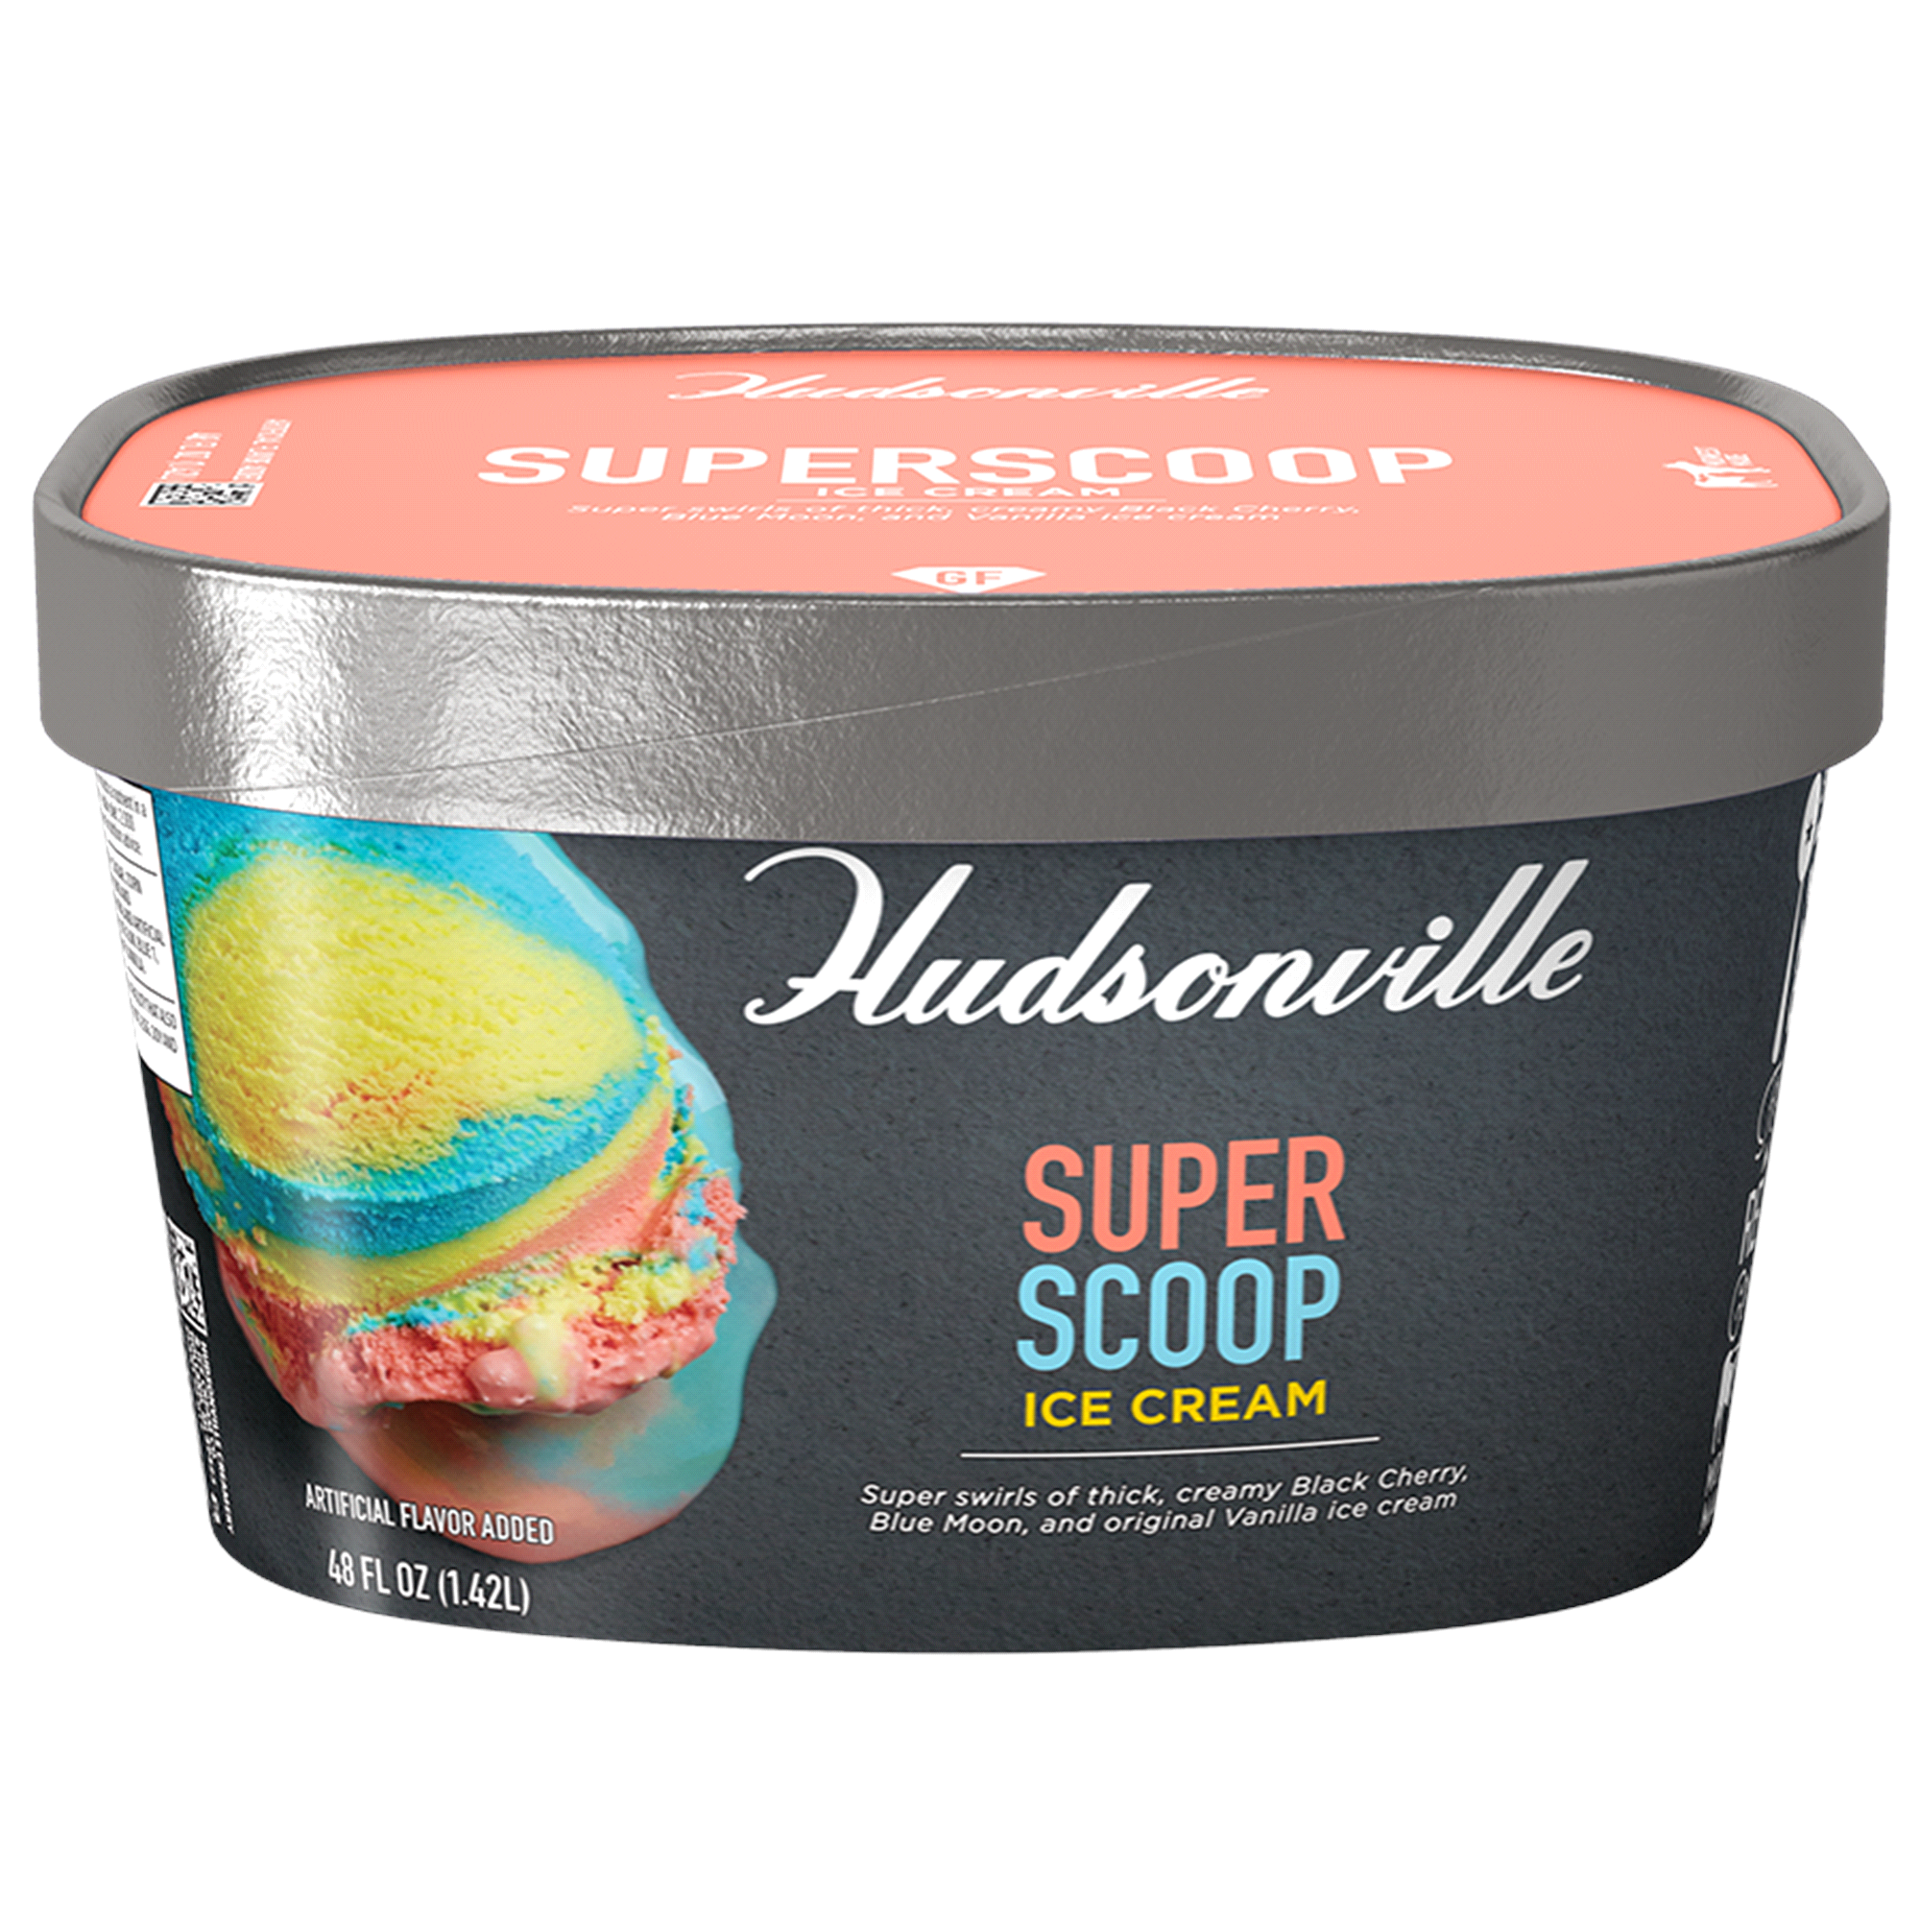 slide 12 of 21, Hudsonville Ice Cream Superscoop, 48 fl oz